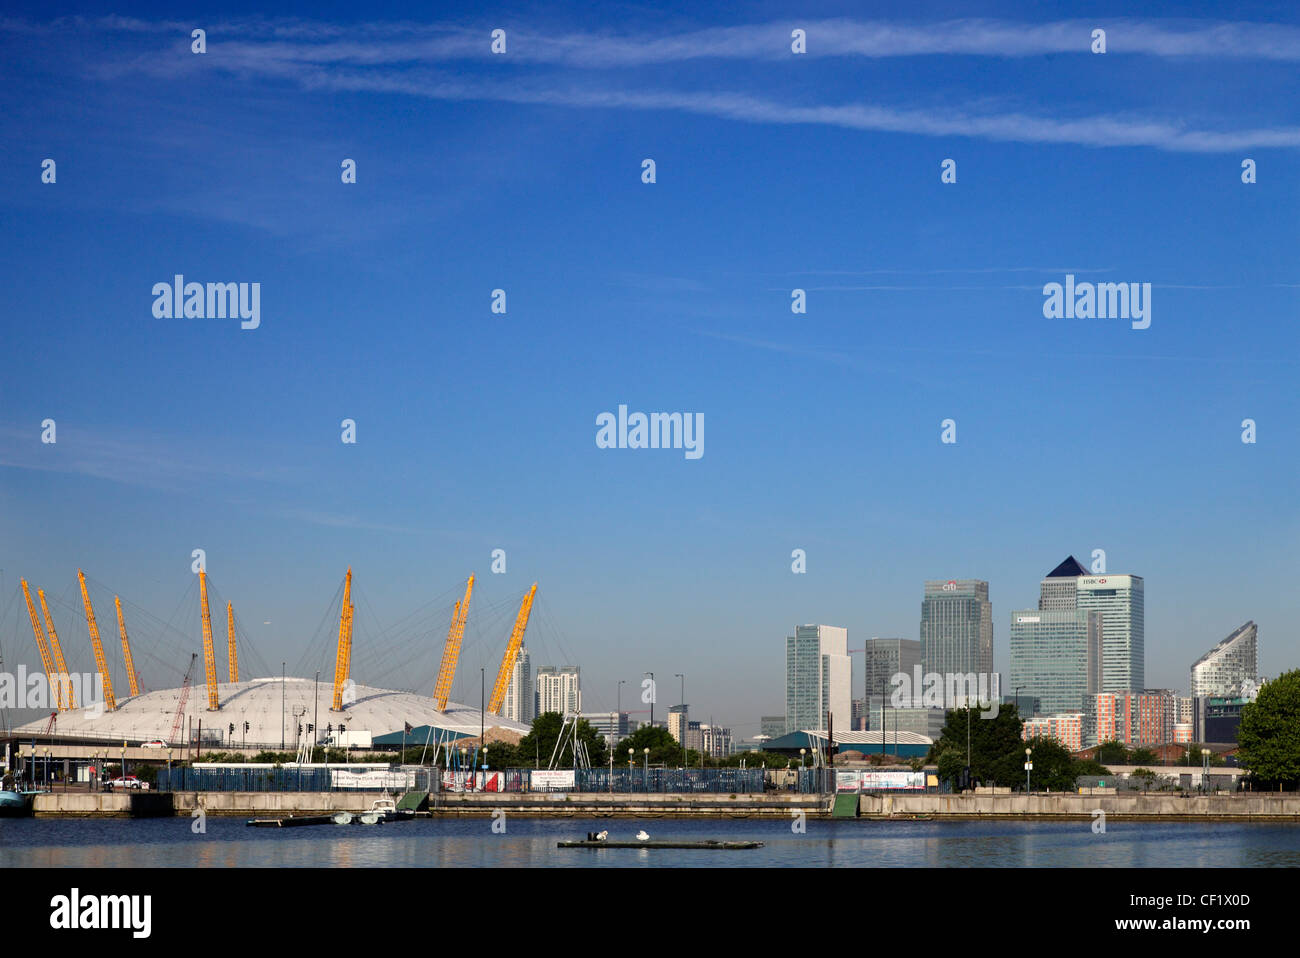 El O2 (anteriormente conocido como el Domo del Milenio) en la península de Greenwich en el sureste de Londres y Canary Wharf, desarrollo Foto de stock